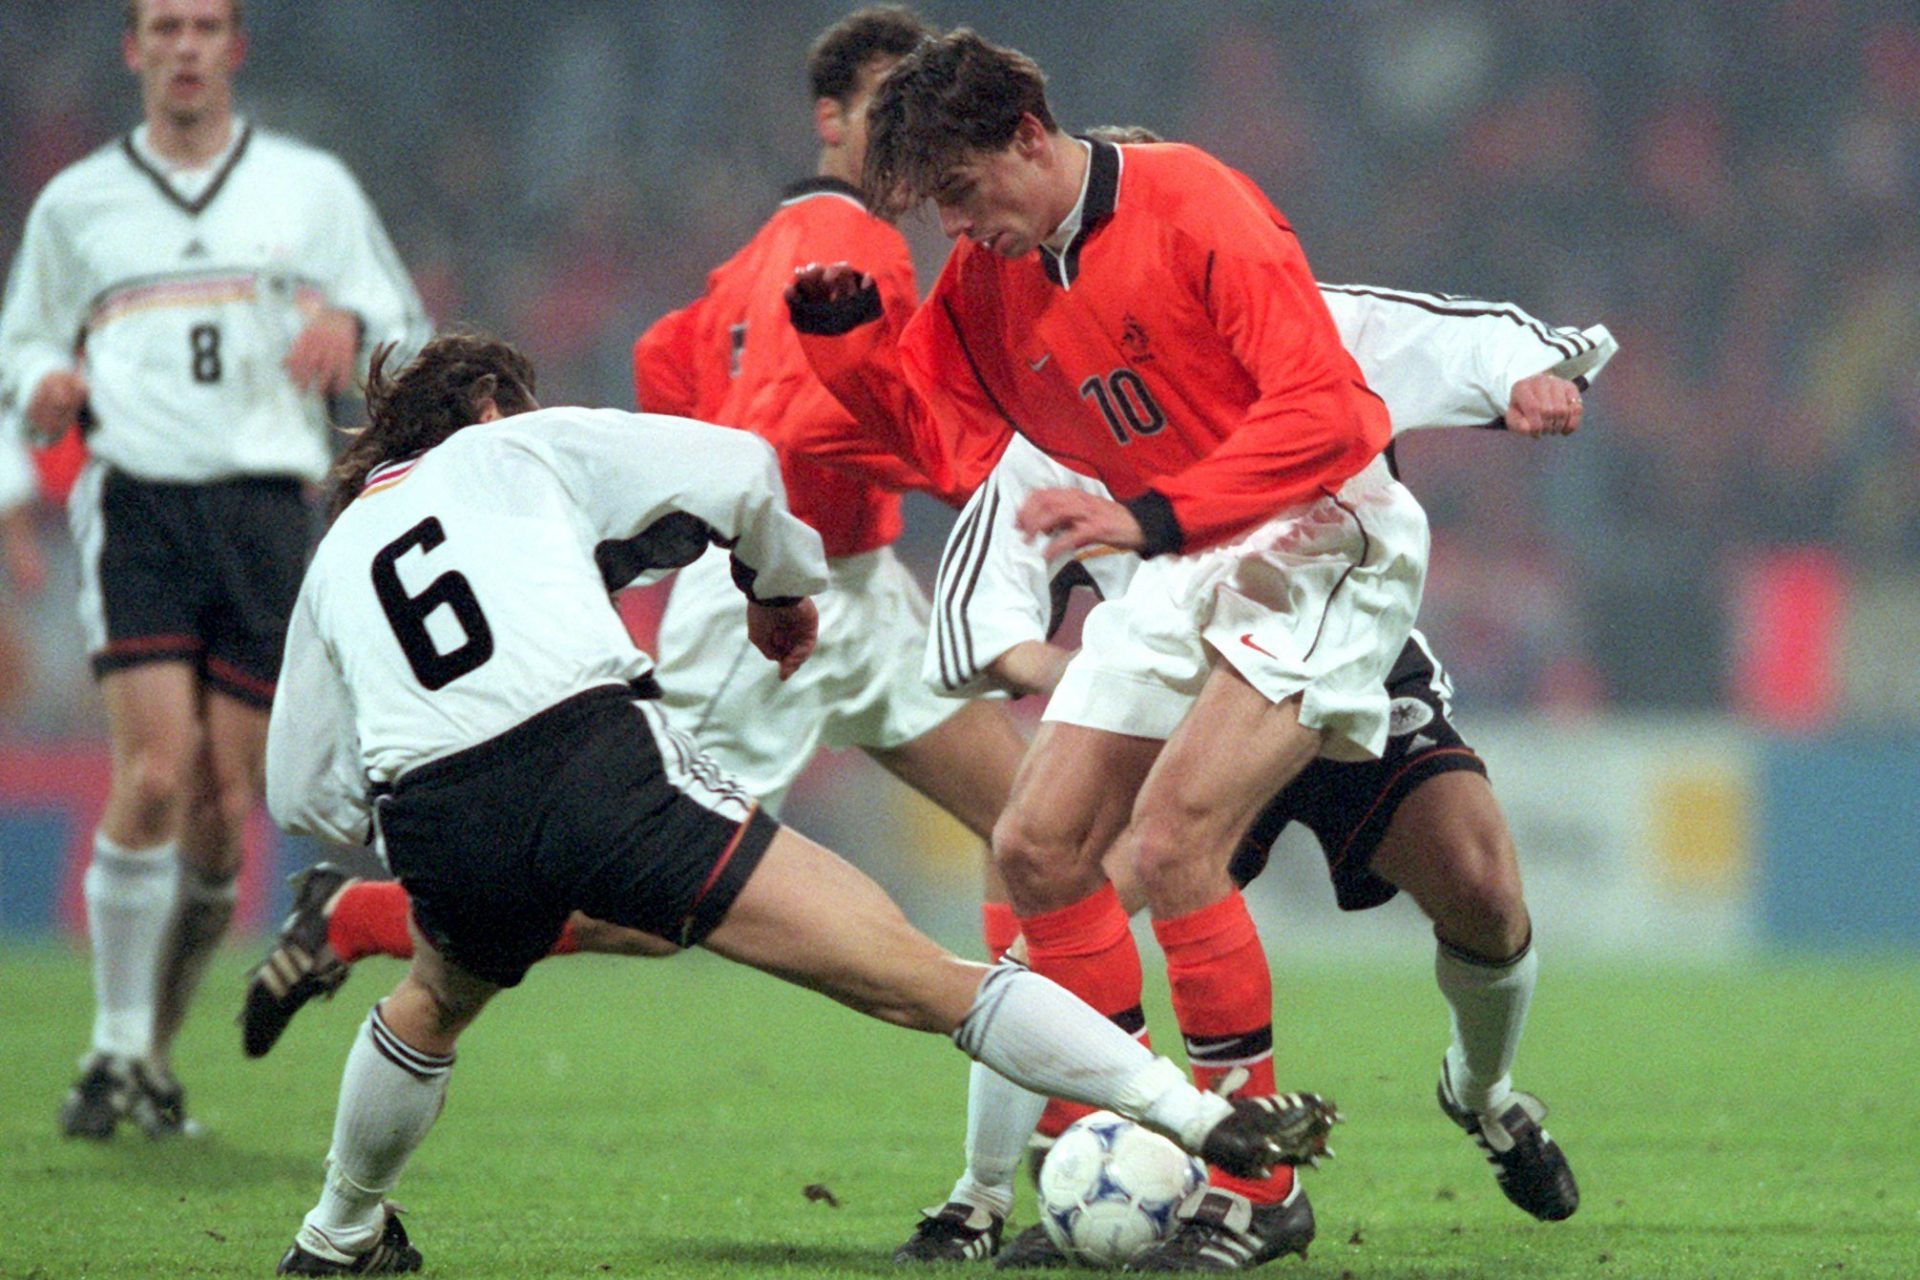 <p>Dopo la stagione 1996-97, il giovane attaccante olandese viene trasferito all'Heerenveen per una somma di 1,58 milioni di euro, stando ai dati di Transfermarkt. Ma non resterà a lungo nel club, perché le sue ottime prestazioni suscitano l'interesse delle grandi squadre europee.</p>